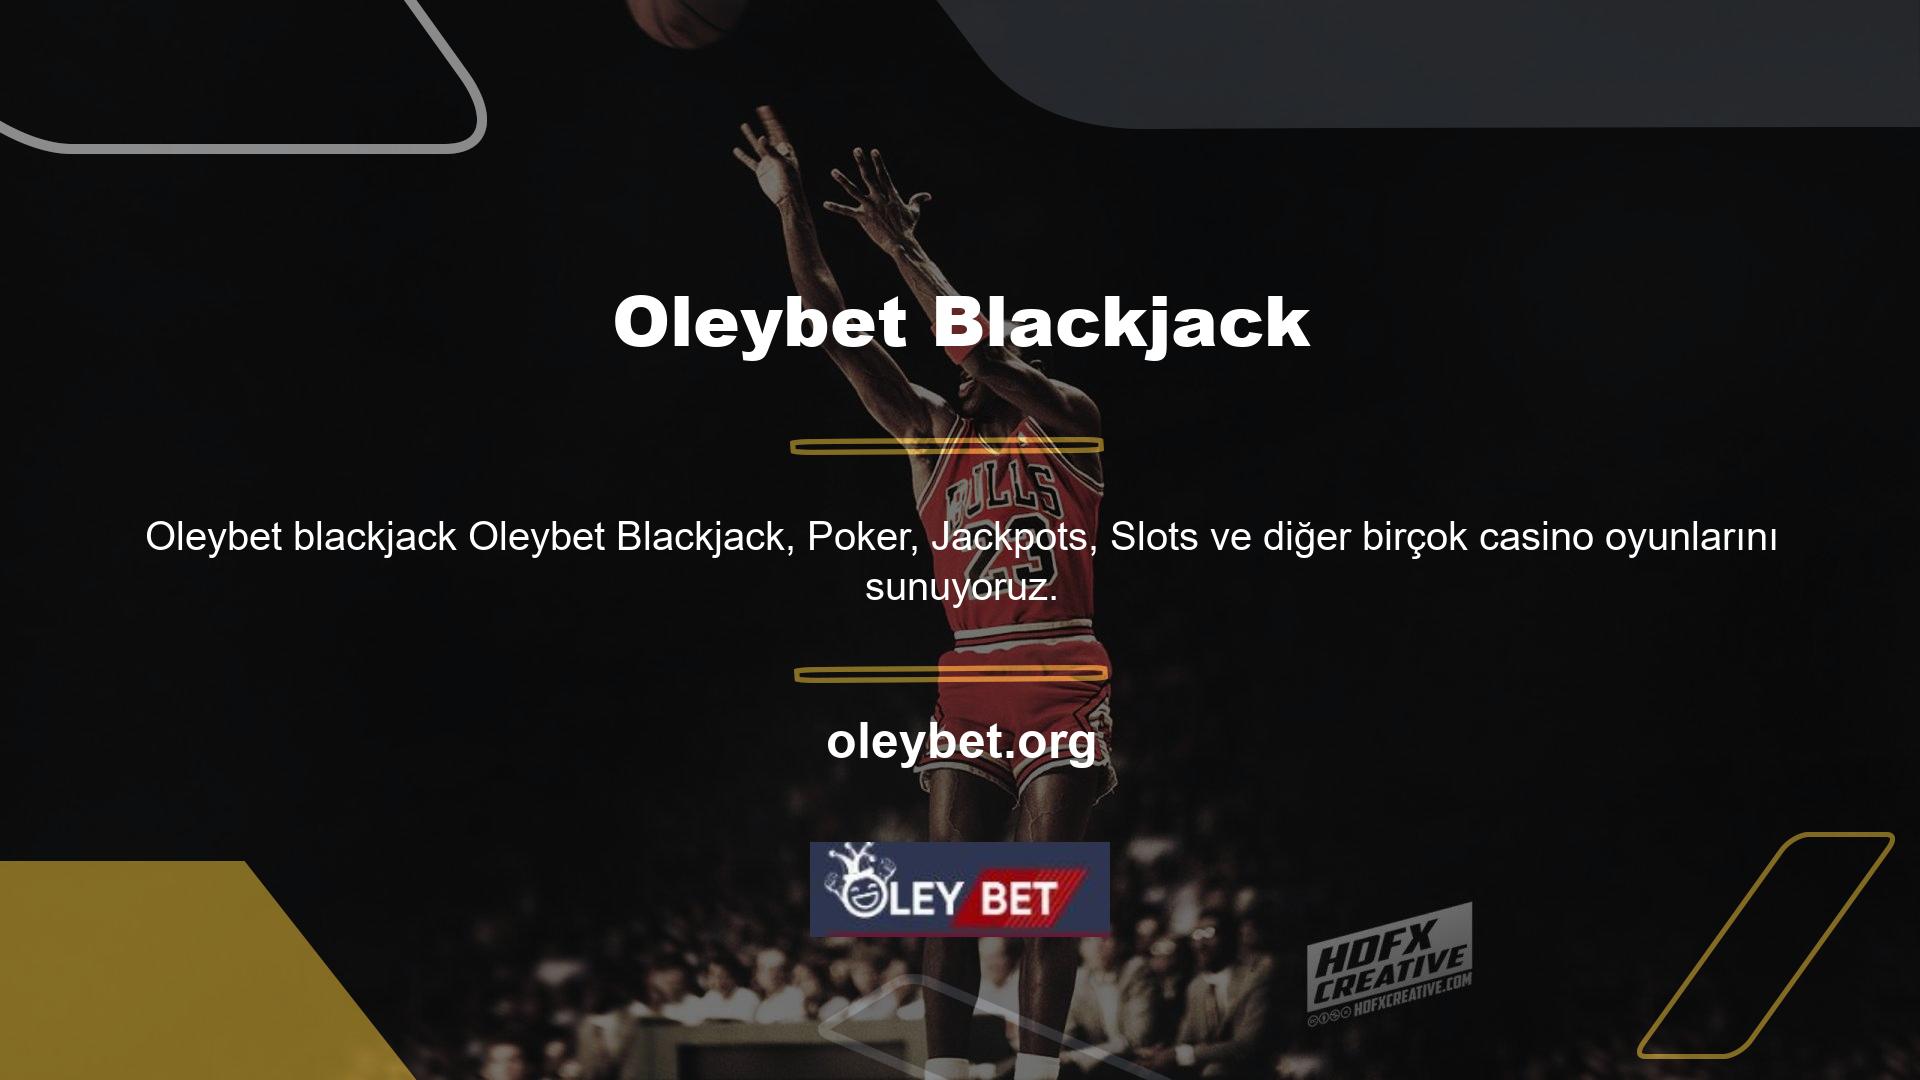 Oleybet Mobile, casinoya her zaman, her yerde bağlanmayı ve oyun oynamayı kolaylaştırır